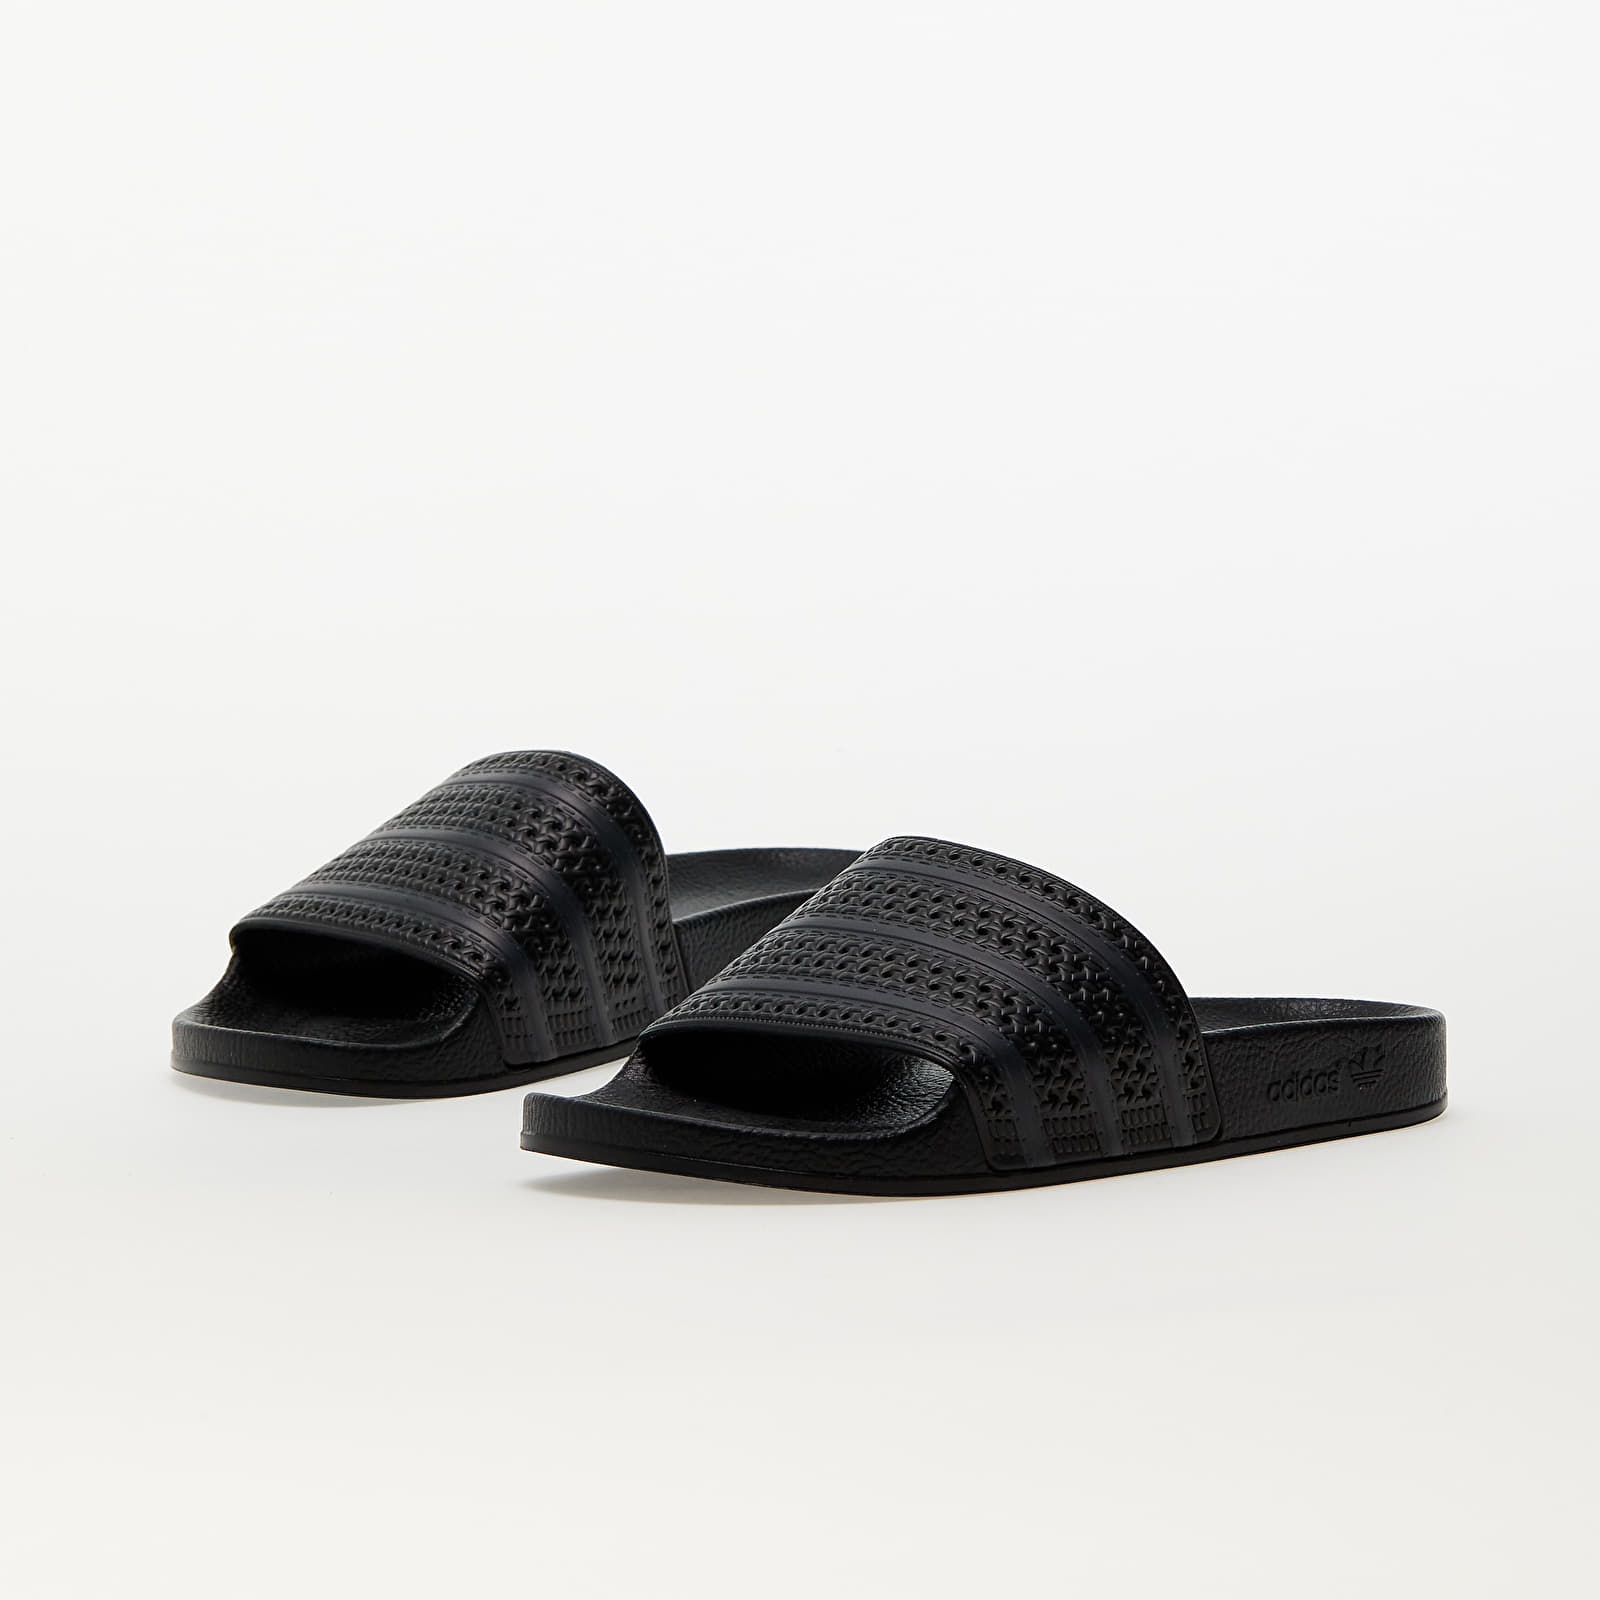 Men's shoes adidas Adilette Core Black/ Core Black/ Carbon | Footshop